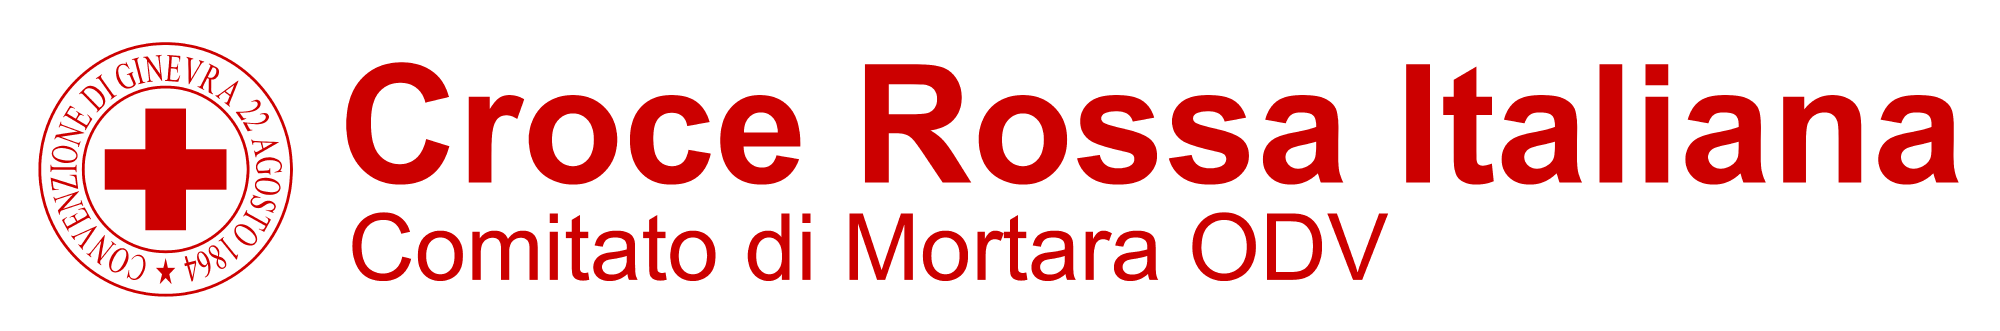 Croce Rossa Italiana - Comitato di Mortara